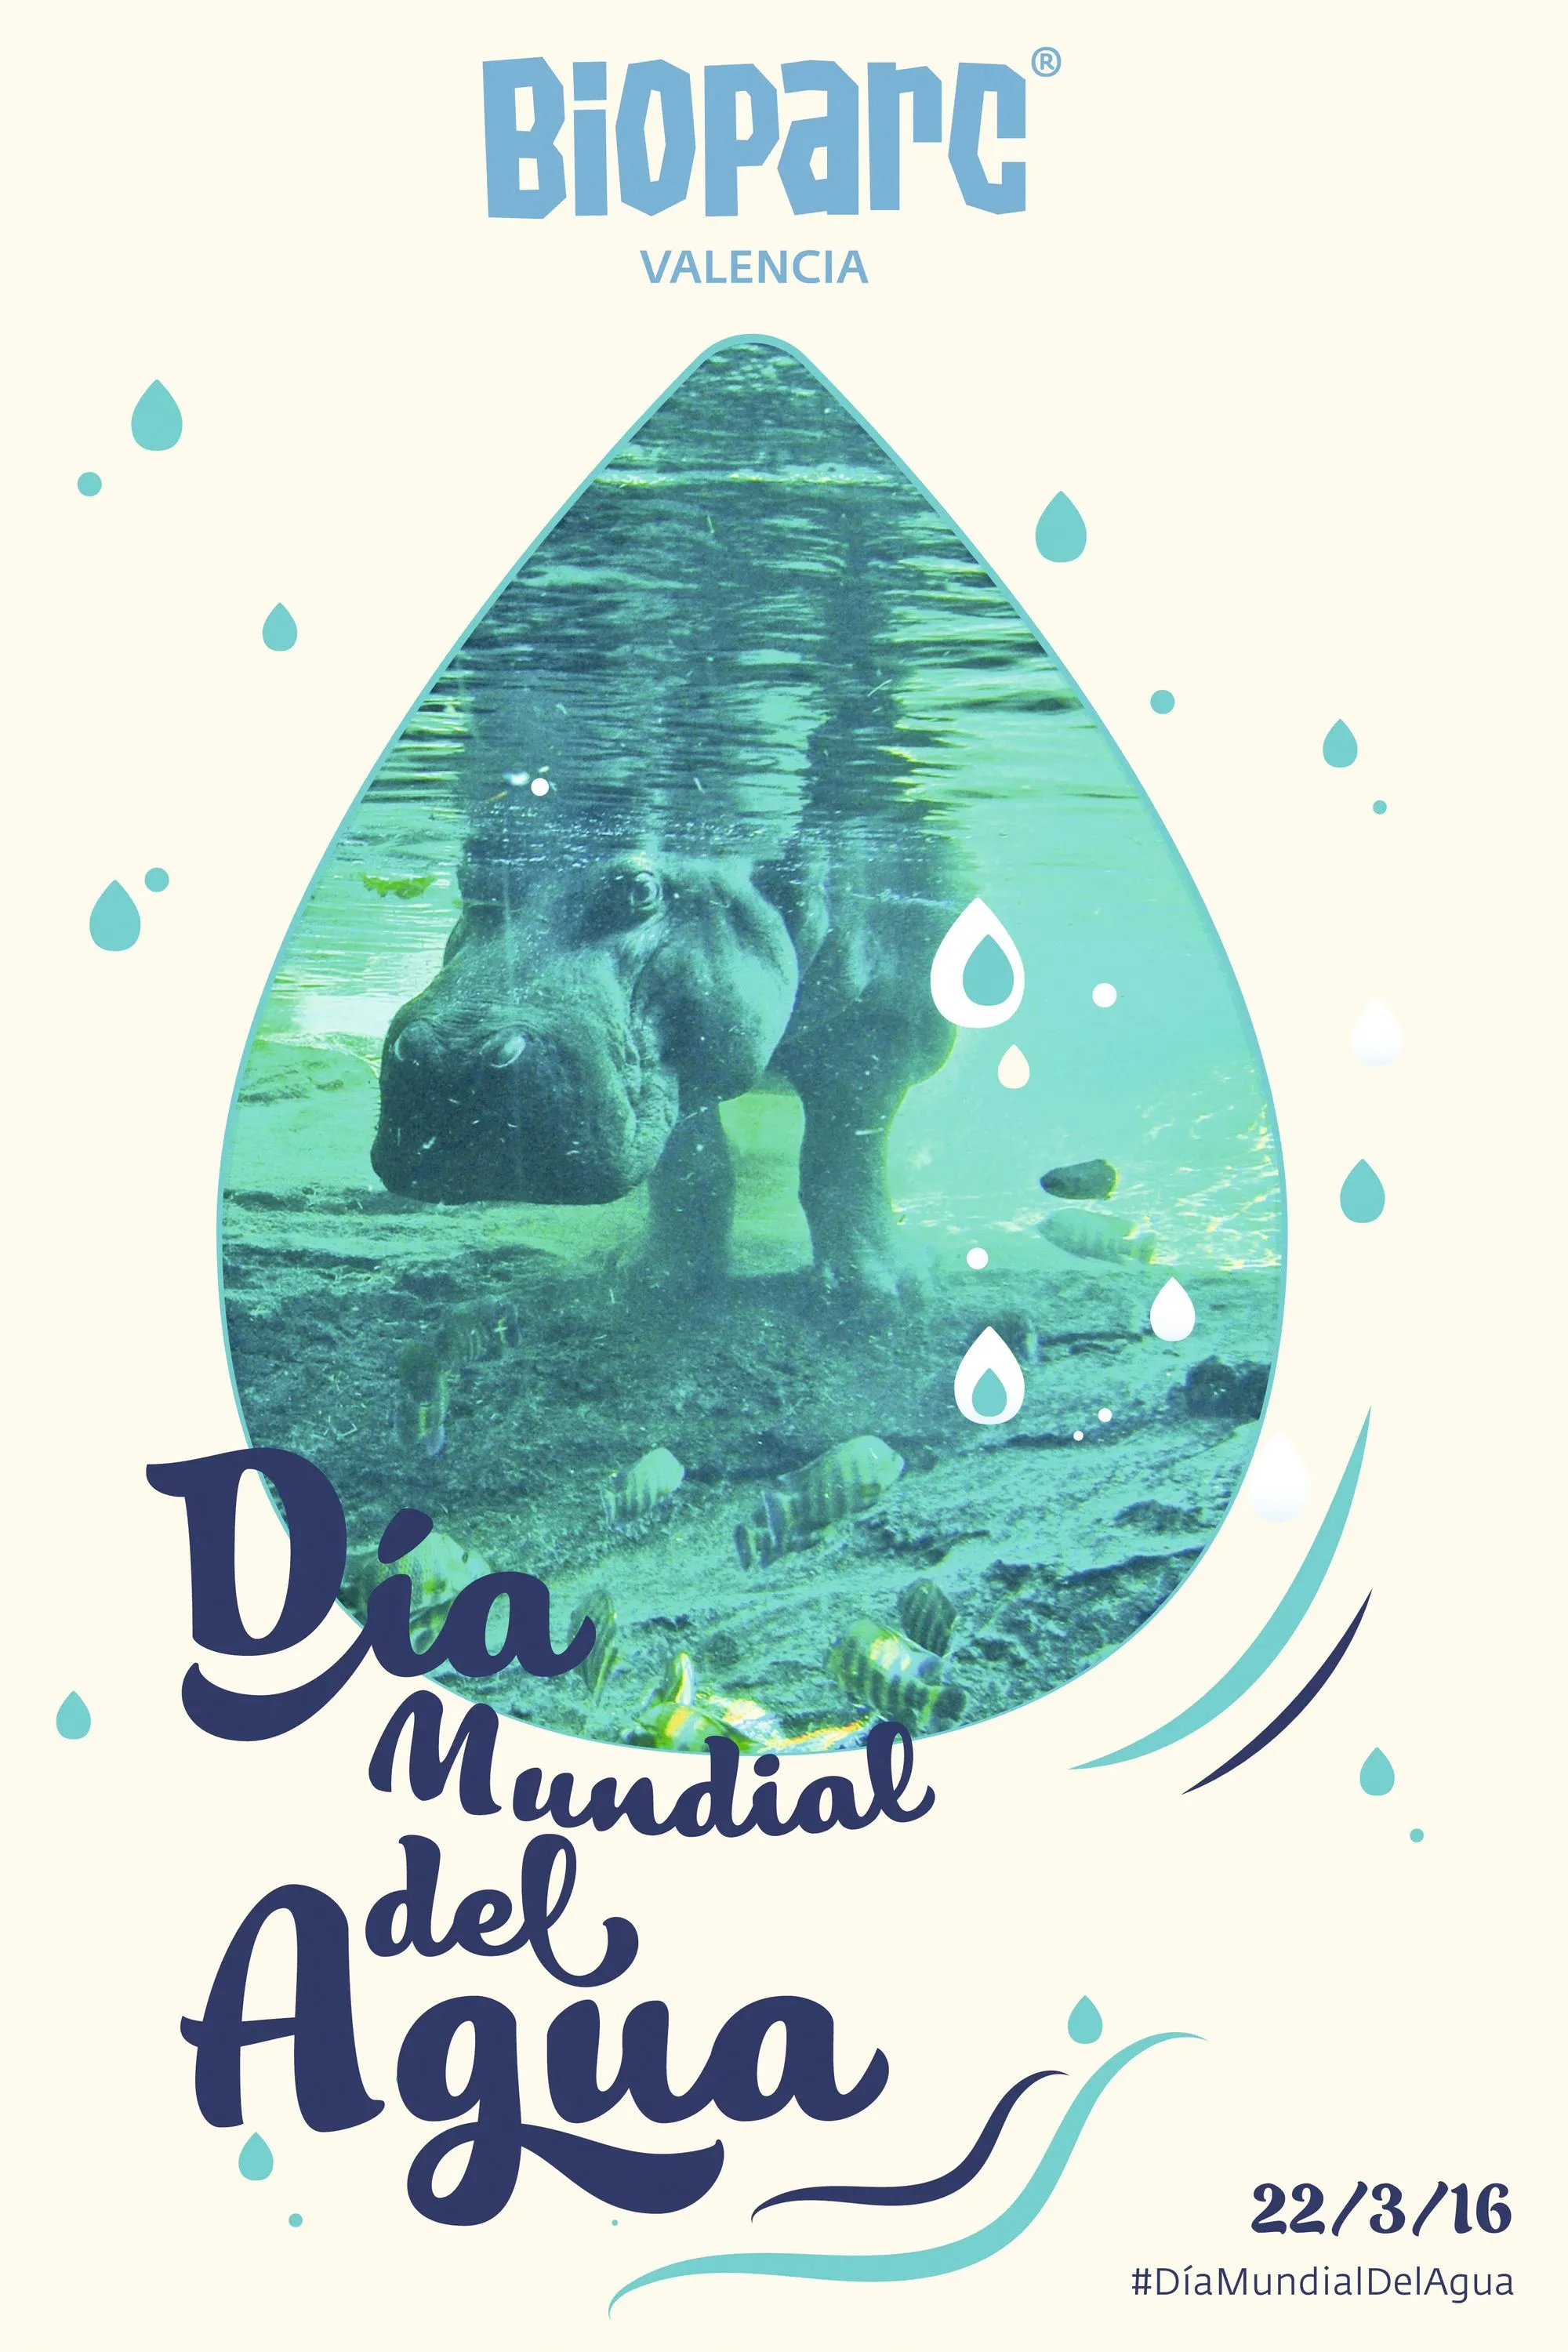 Cartel del Día Mundial del Agua, Bioparc Valencia, 2016.